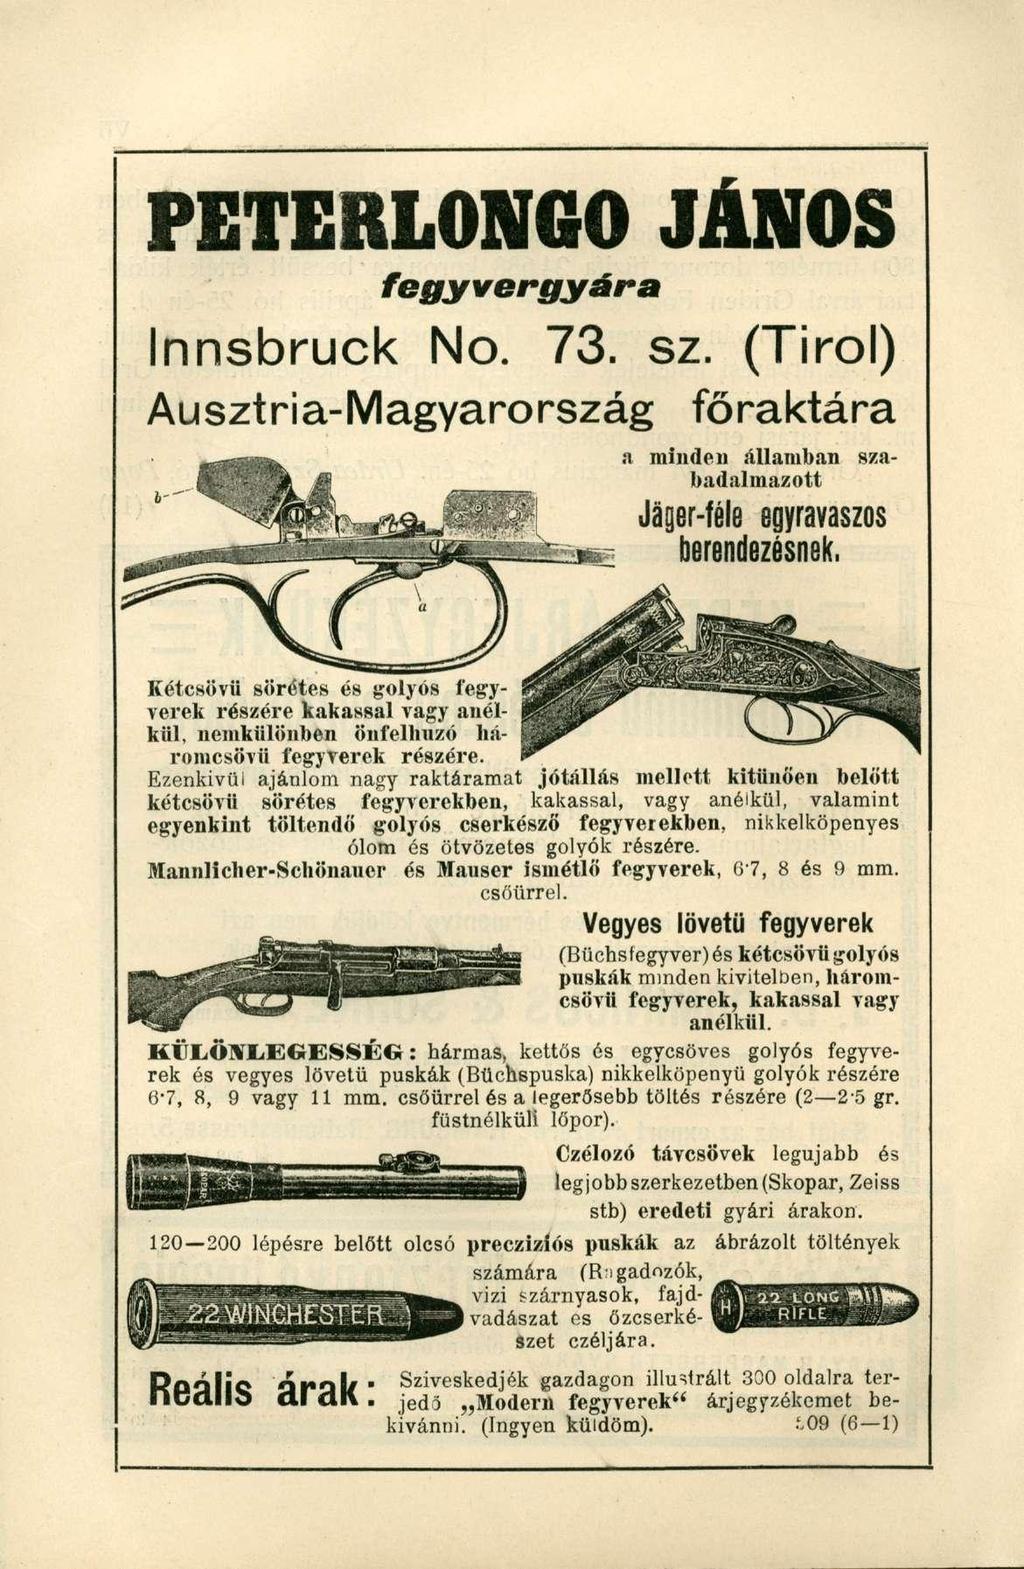 P E T E R L O N G O J Á N O S fegyvergyára Innsbruck No. 73. sz. (Tirol) Ausztria-Magyarország főraktára a minde n államba n sza - badalmazott Jáger-féleegyravaszos berendezésnek.